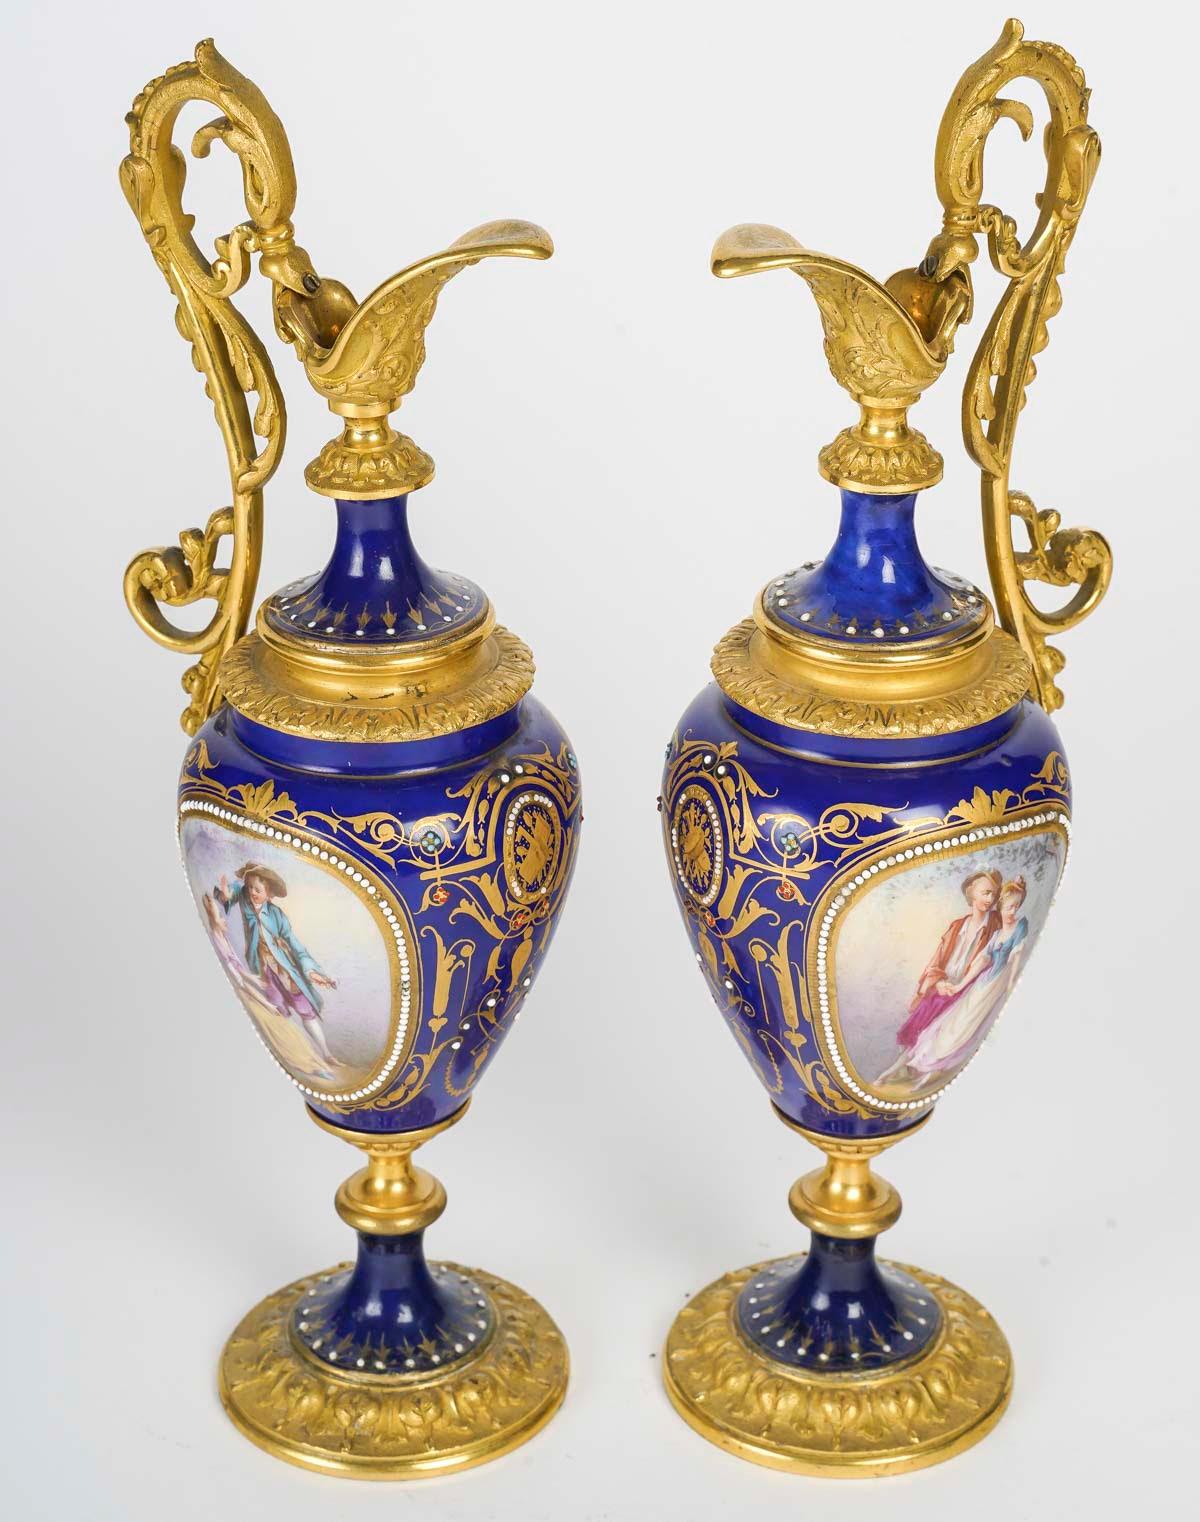 Paire d'aiguières en bronze doré et porcelaine bleu roi, XIXe siècle, période Napoléon III.

Paire d'aiguières en bronze doré et porcelaine bleu roi, émaillées d'or avec une scène galante peinte à la main sur le devant et une décoration florale sur